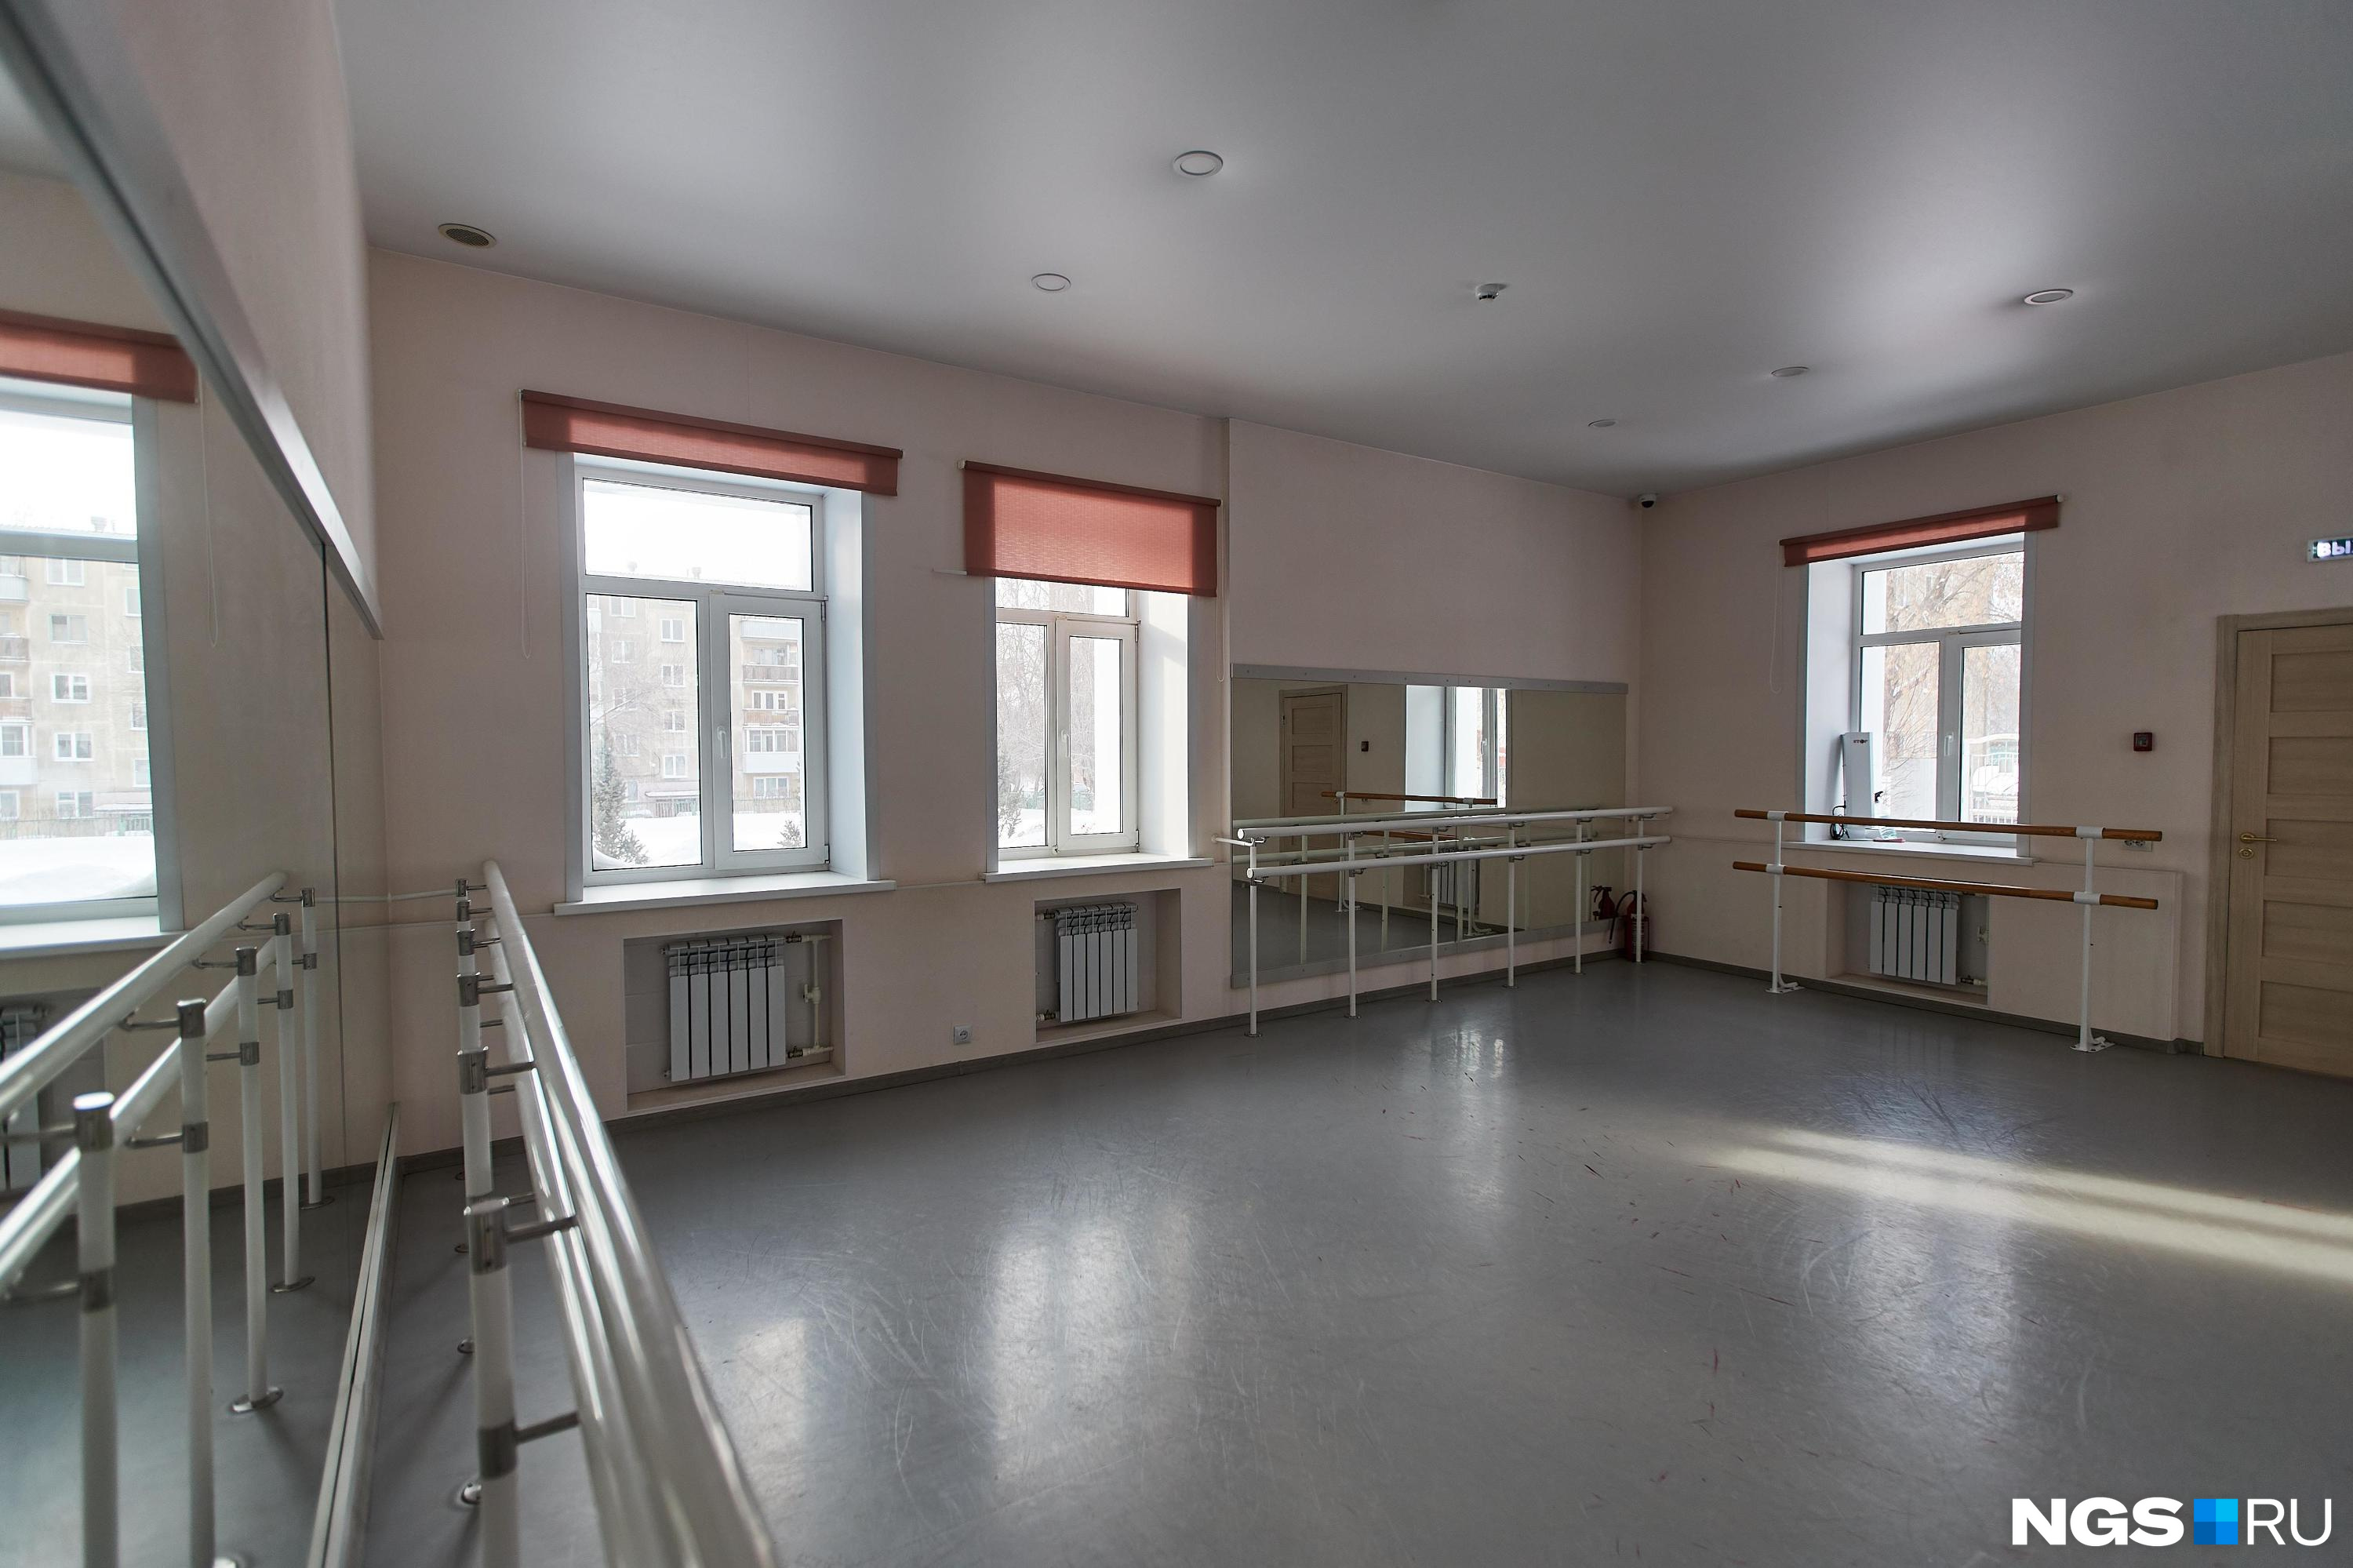 Танцевальный зал построят для училища искусств в Чите к концу 2024 года